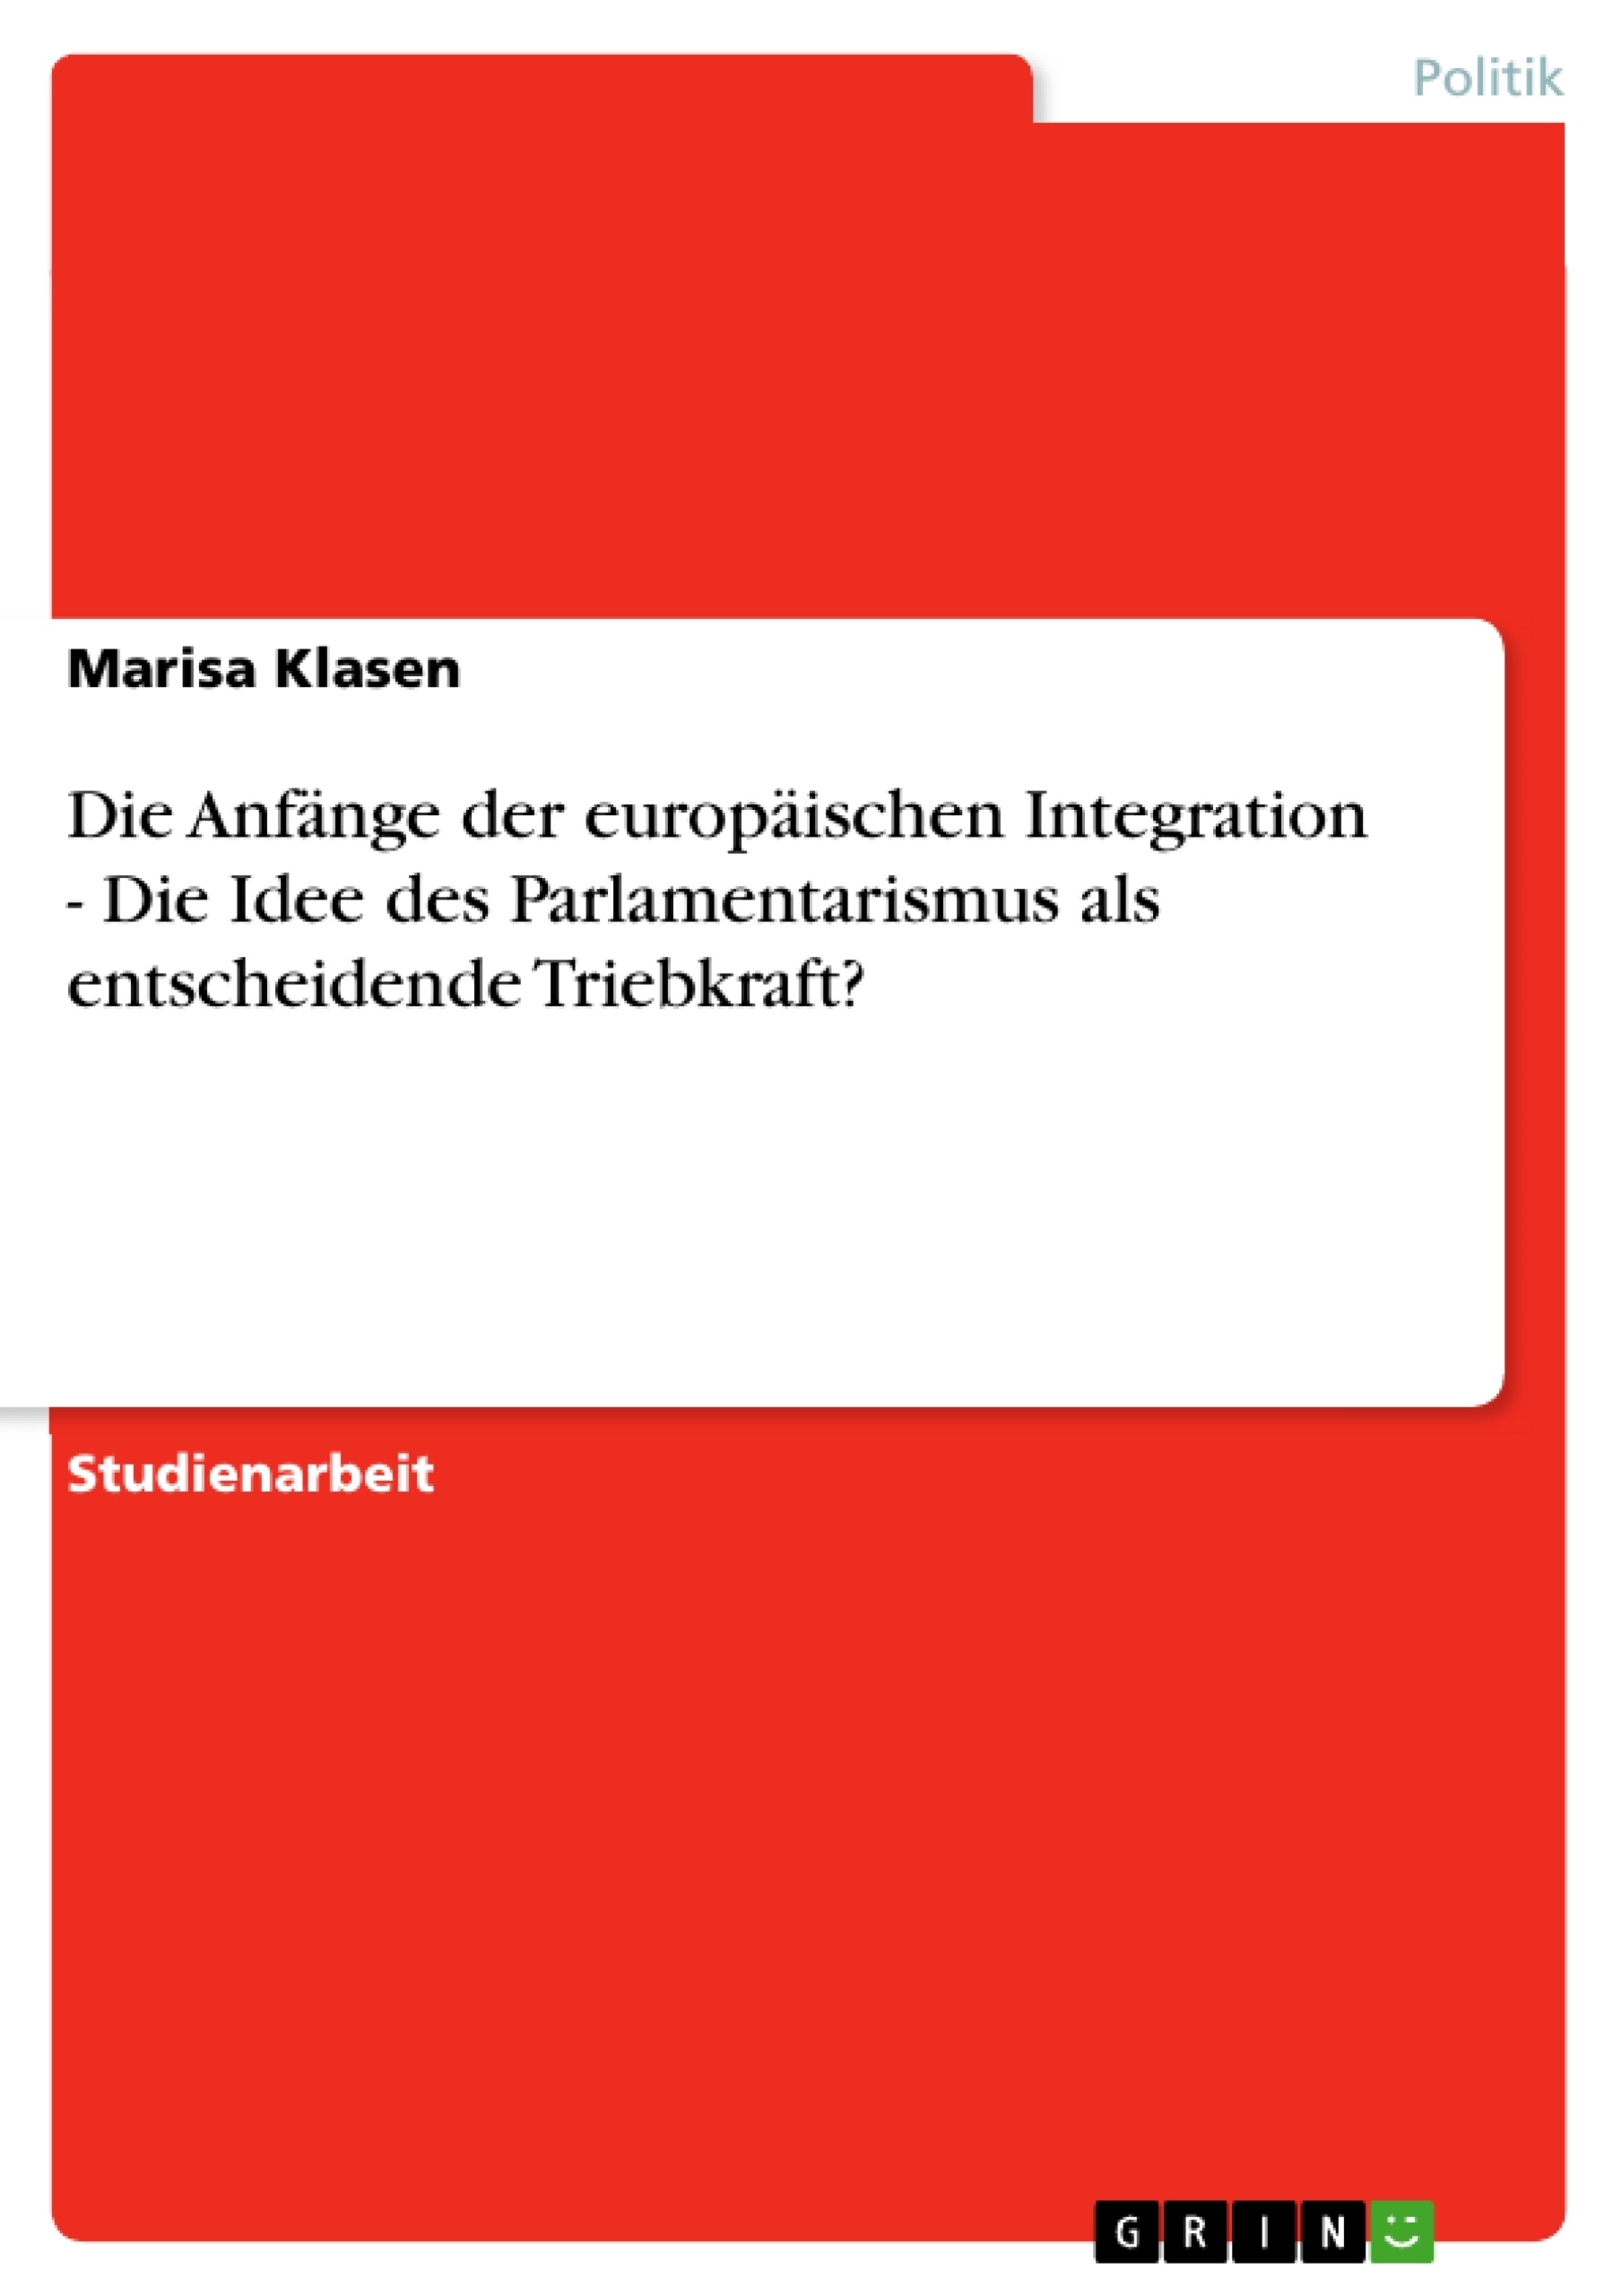 Título: Die Anfänge der europäischen Integration - Die Idee des Parlamentarismus als entscheidende Triebkraft?